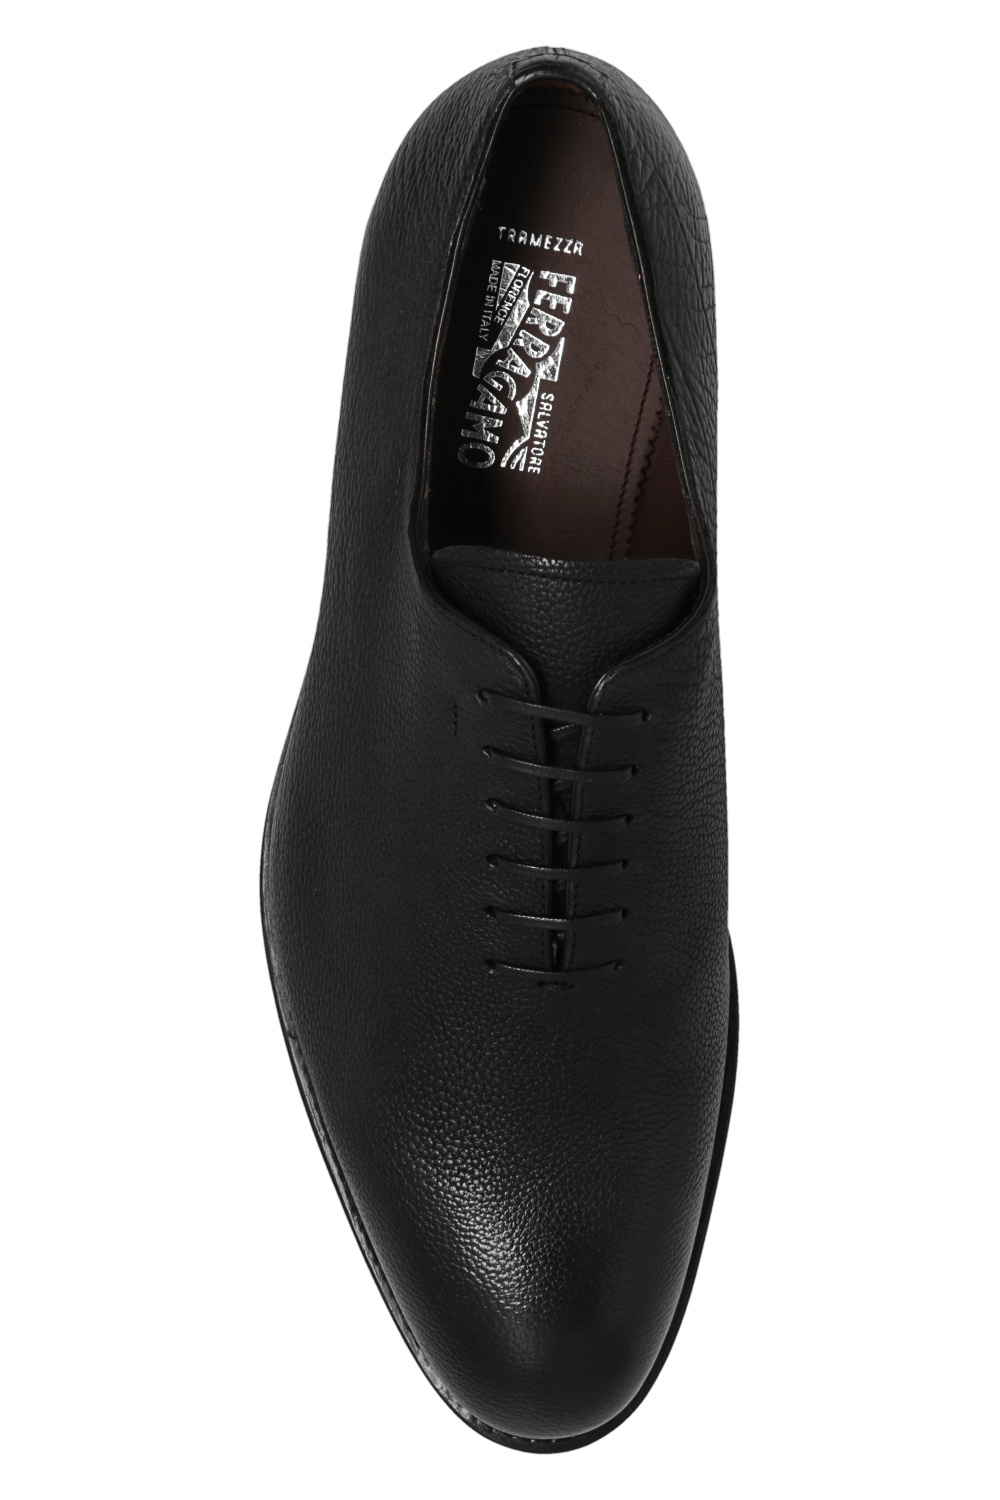 Salvatore Ferragamo ‘Angiolo’ Oxford shoes